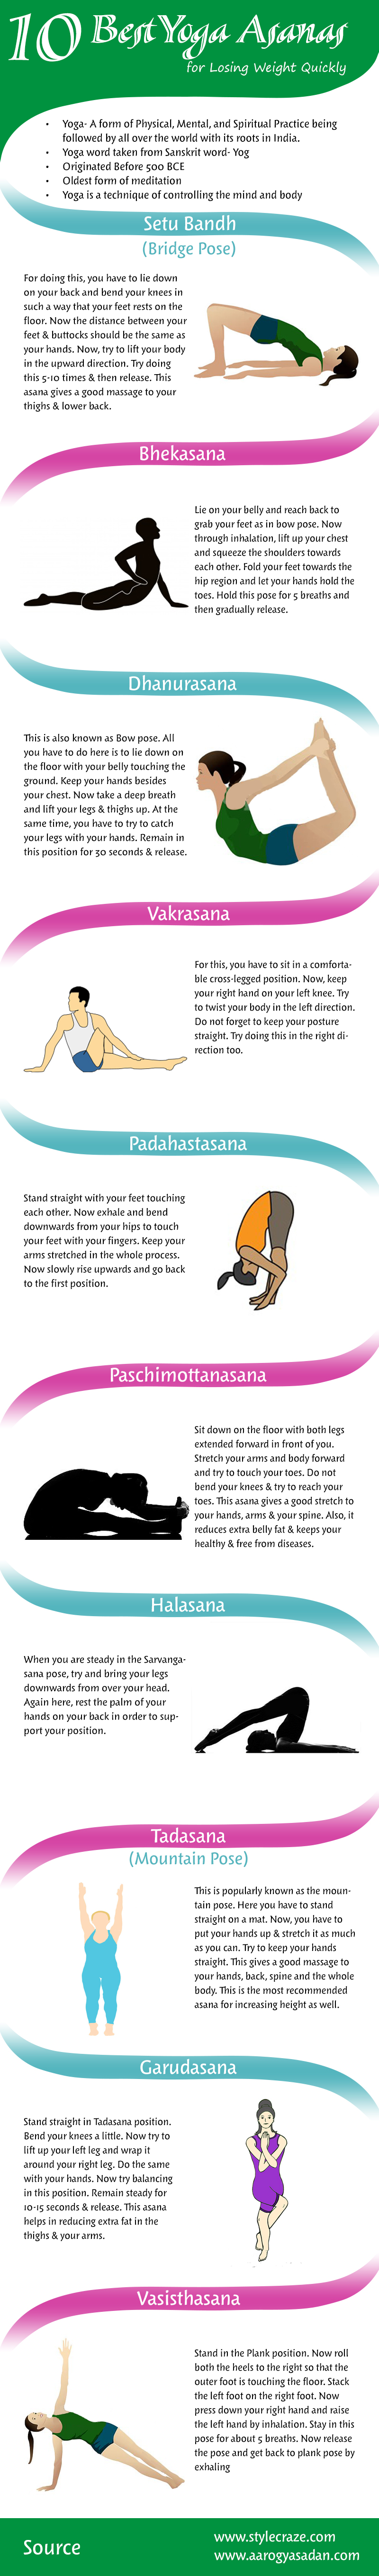 Top 7 Yoga Asanas for Weight Loss - Rishikul Yogshala Blog